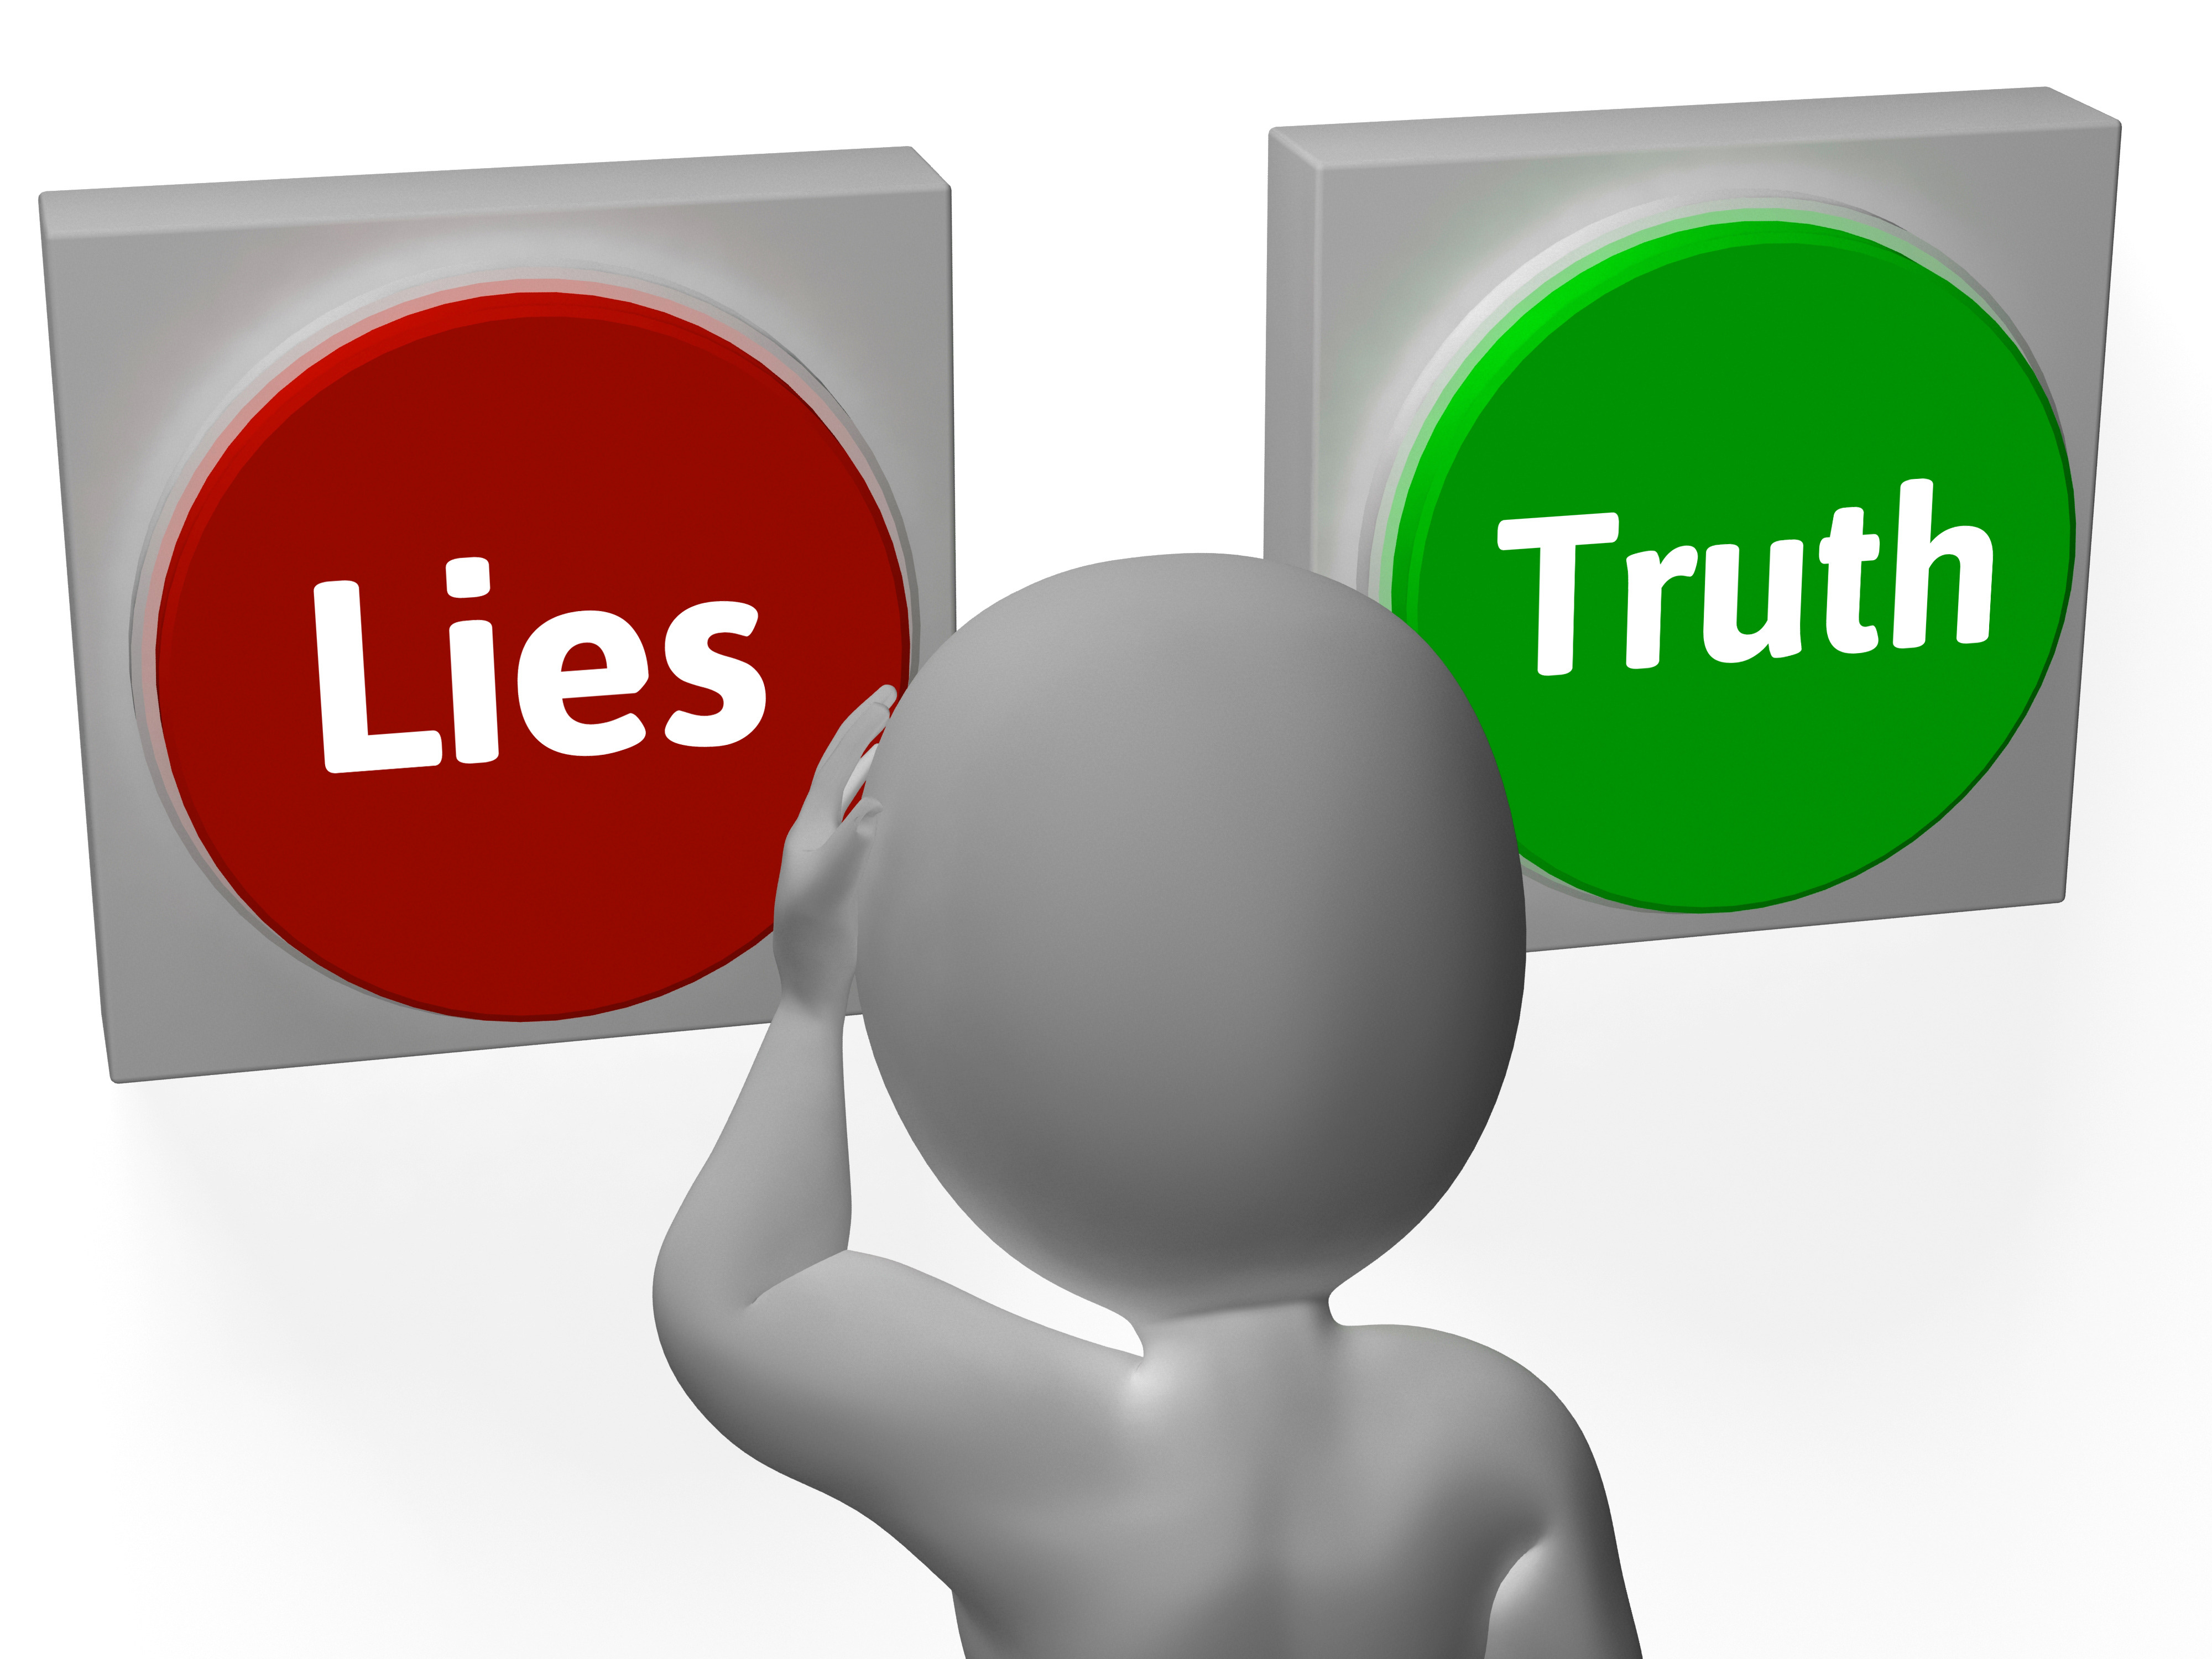 lying breaks trust